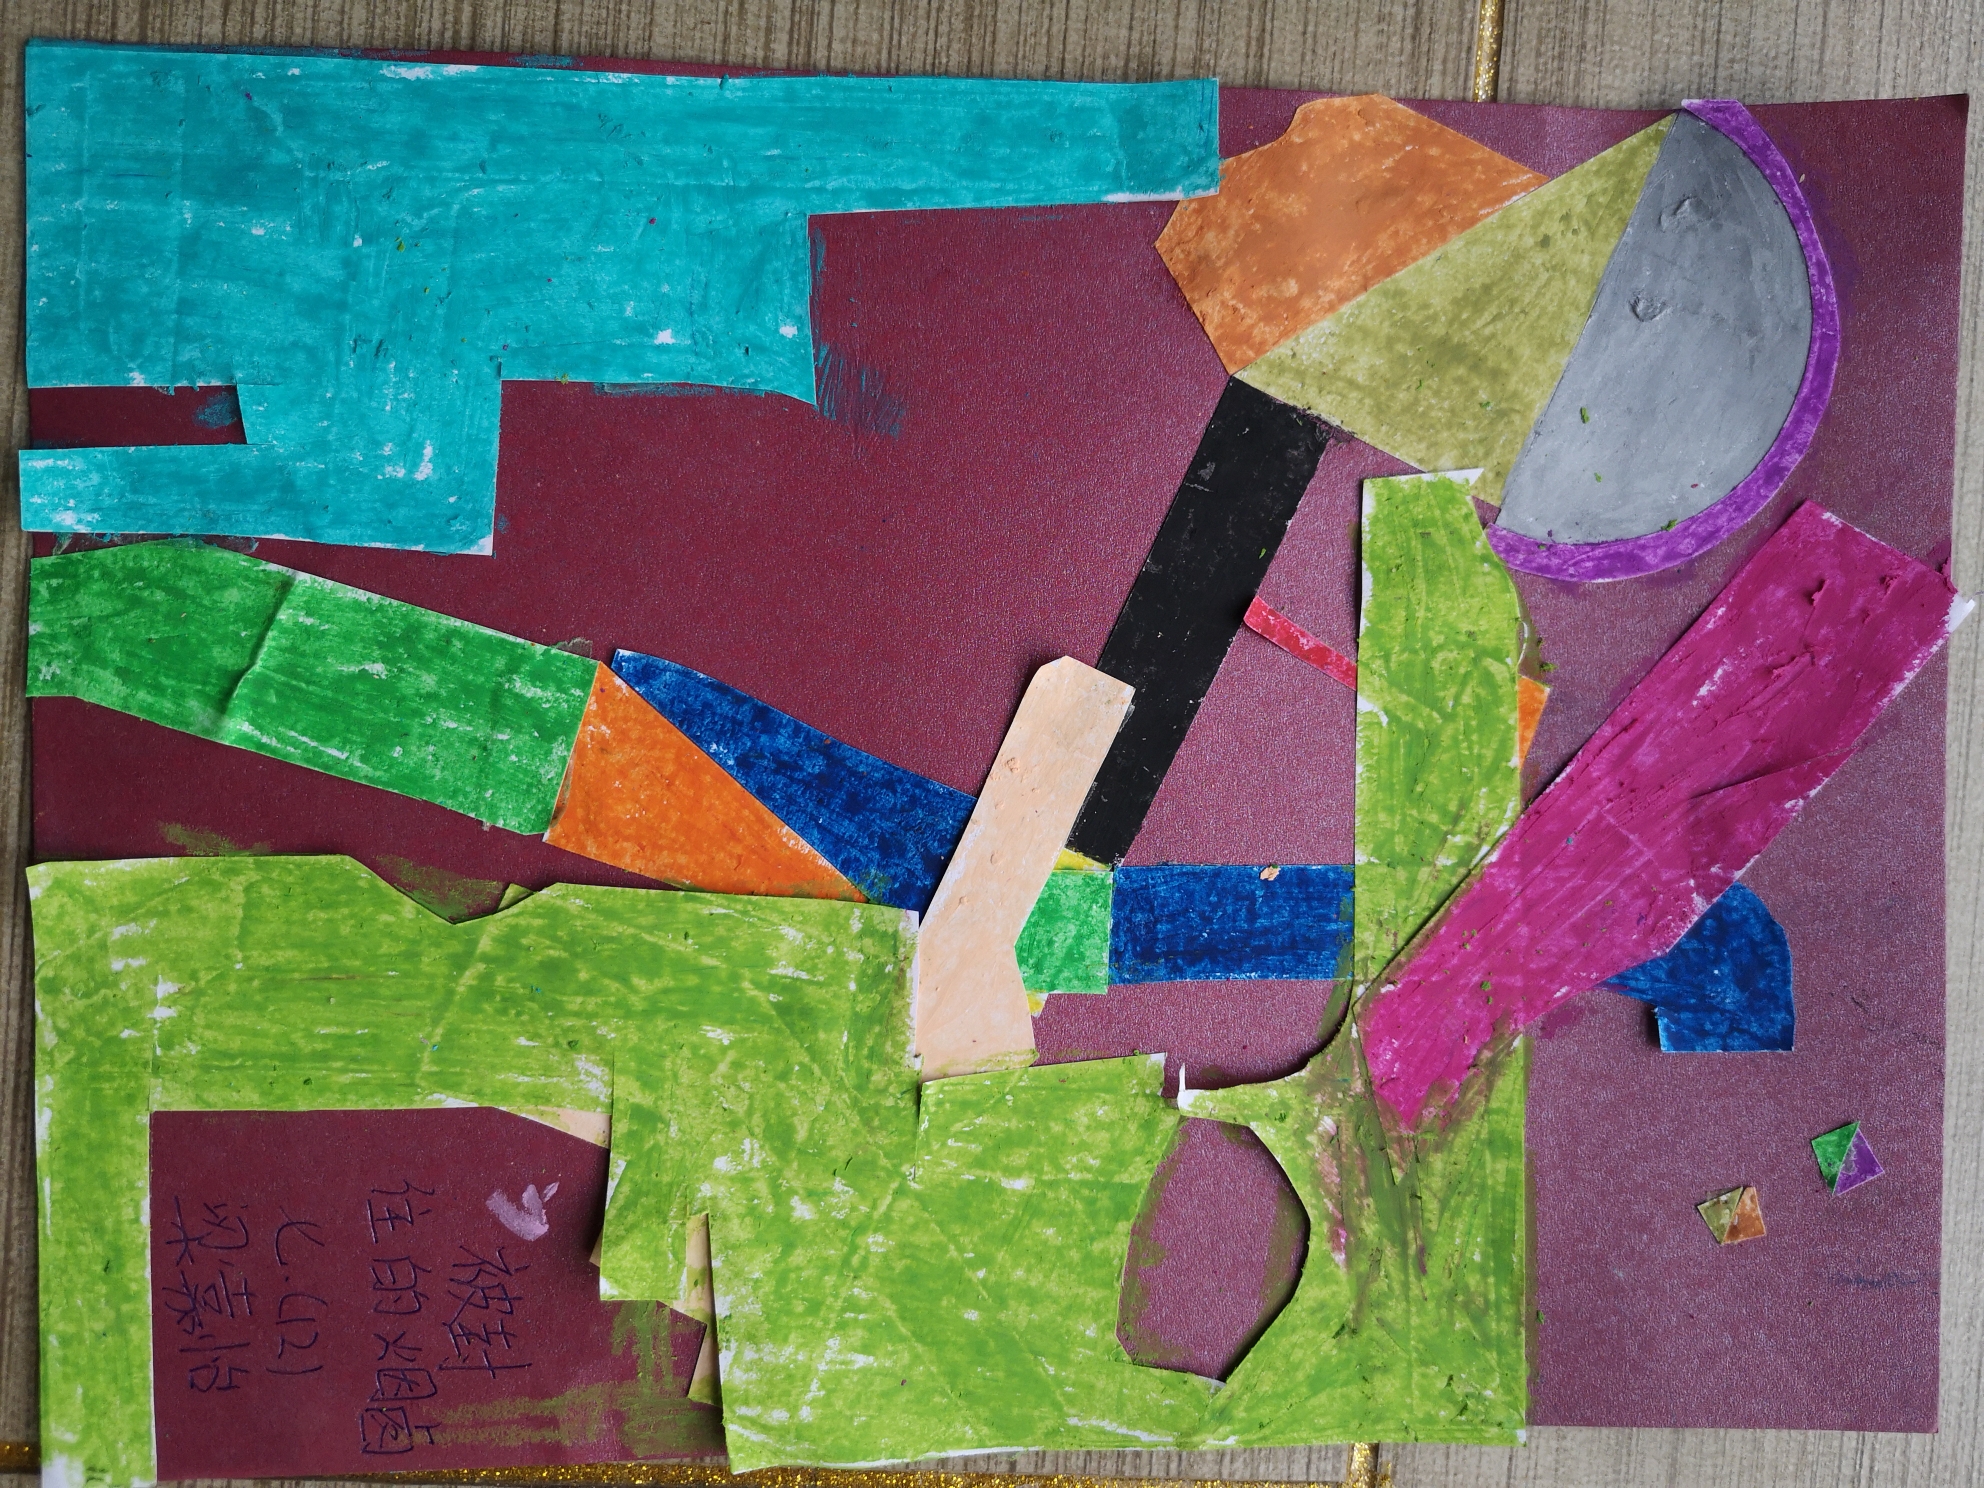 学习毕加索做立体主义拼贴画卓越12班的孩子们,用双手寻找灵感,感受